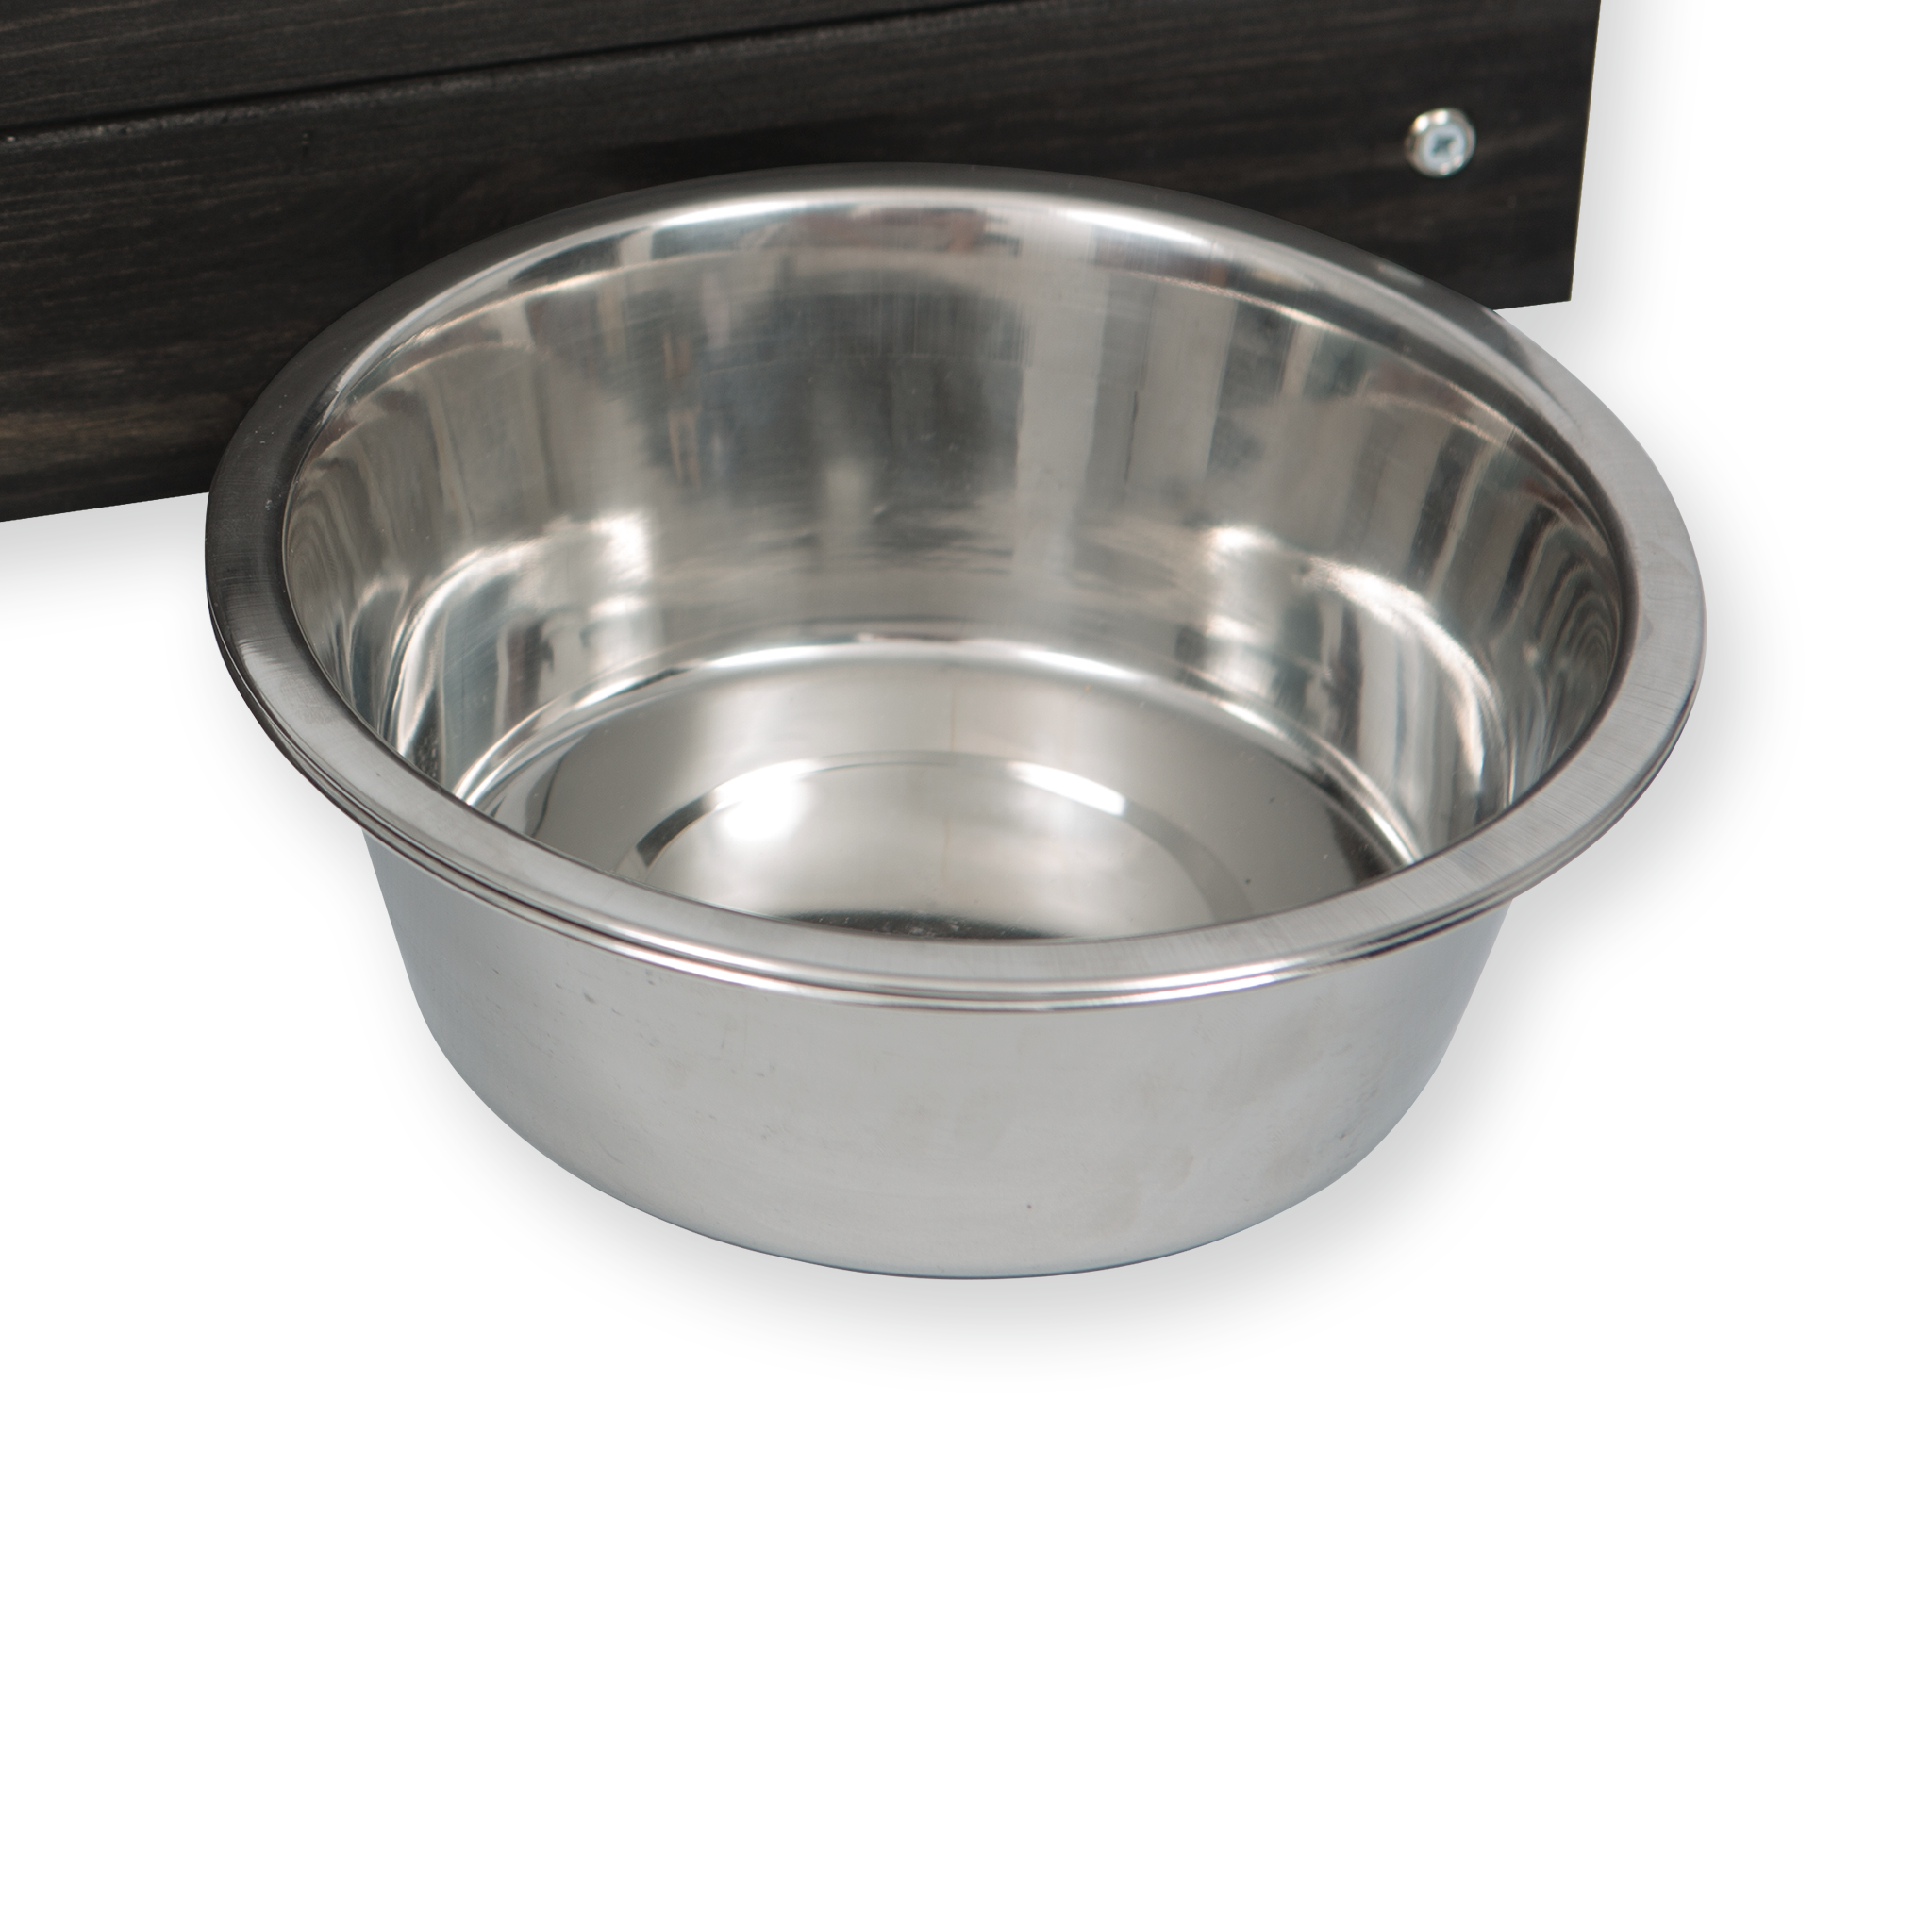 Single Personalised Raised Dog Bowl Stand 10cm High - Ebony Black